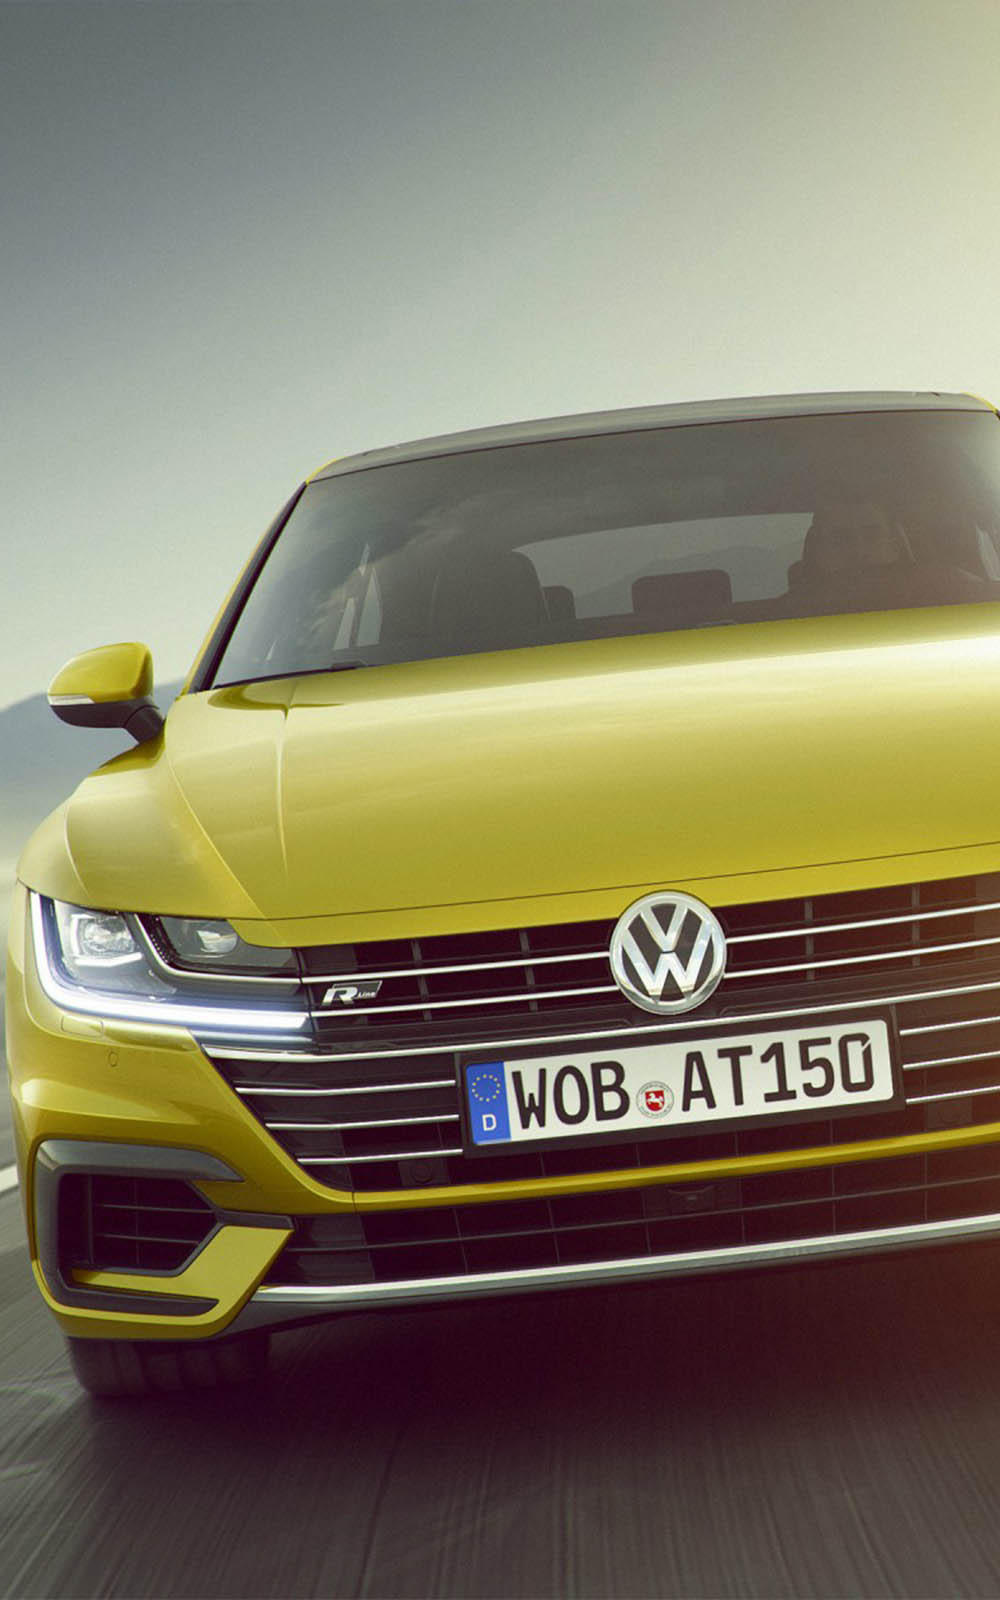 Volkswagen Arteon R Line - Download Free HD Mobile Wallpapers